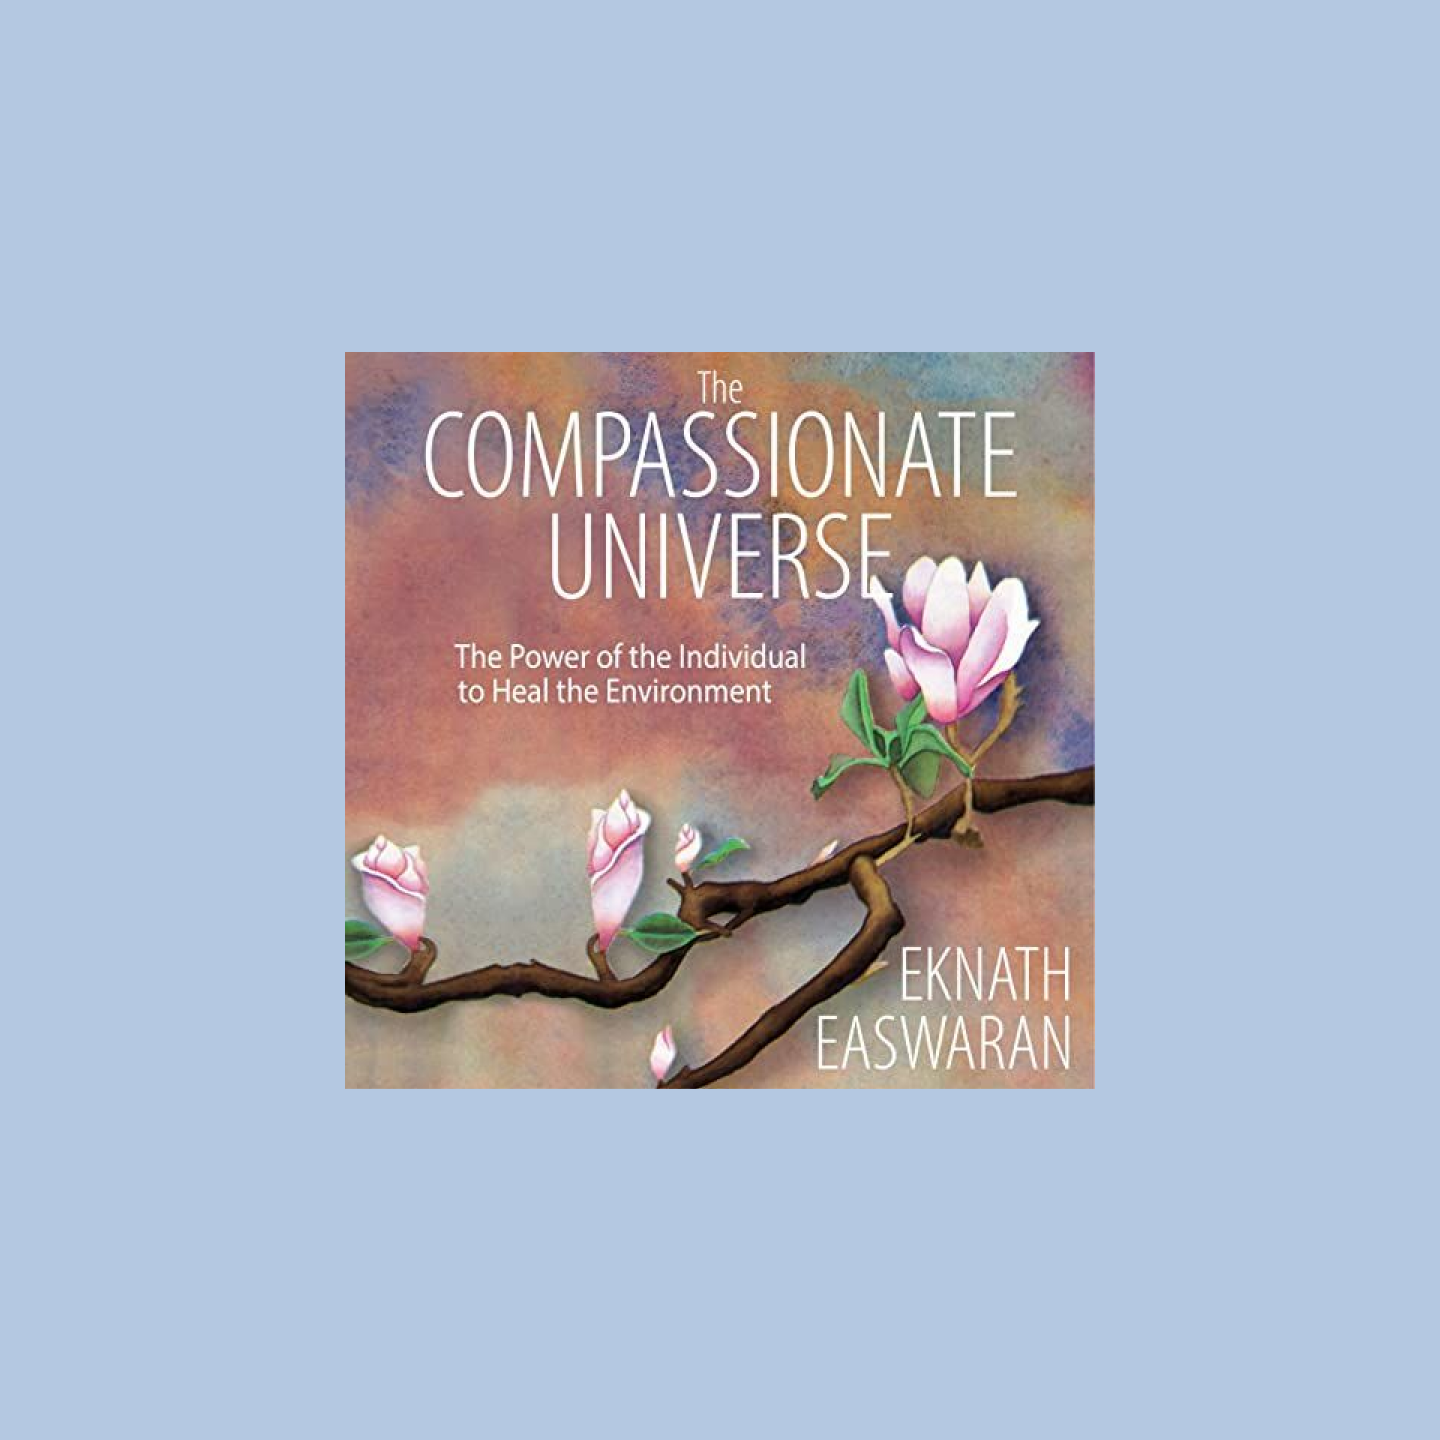 Okładka audiobooka z tytułem „The Compassionate Universe” i narysowaną gałęzią z kwiatami wiśni